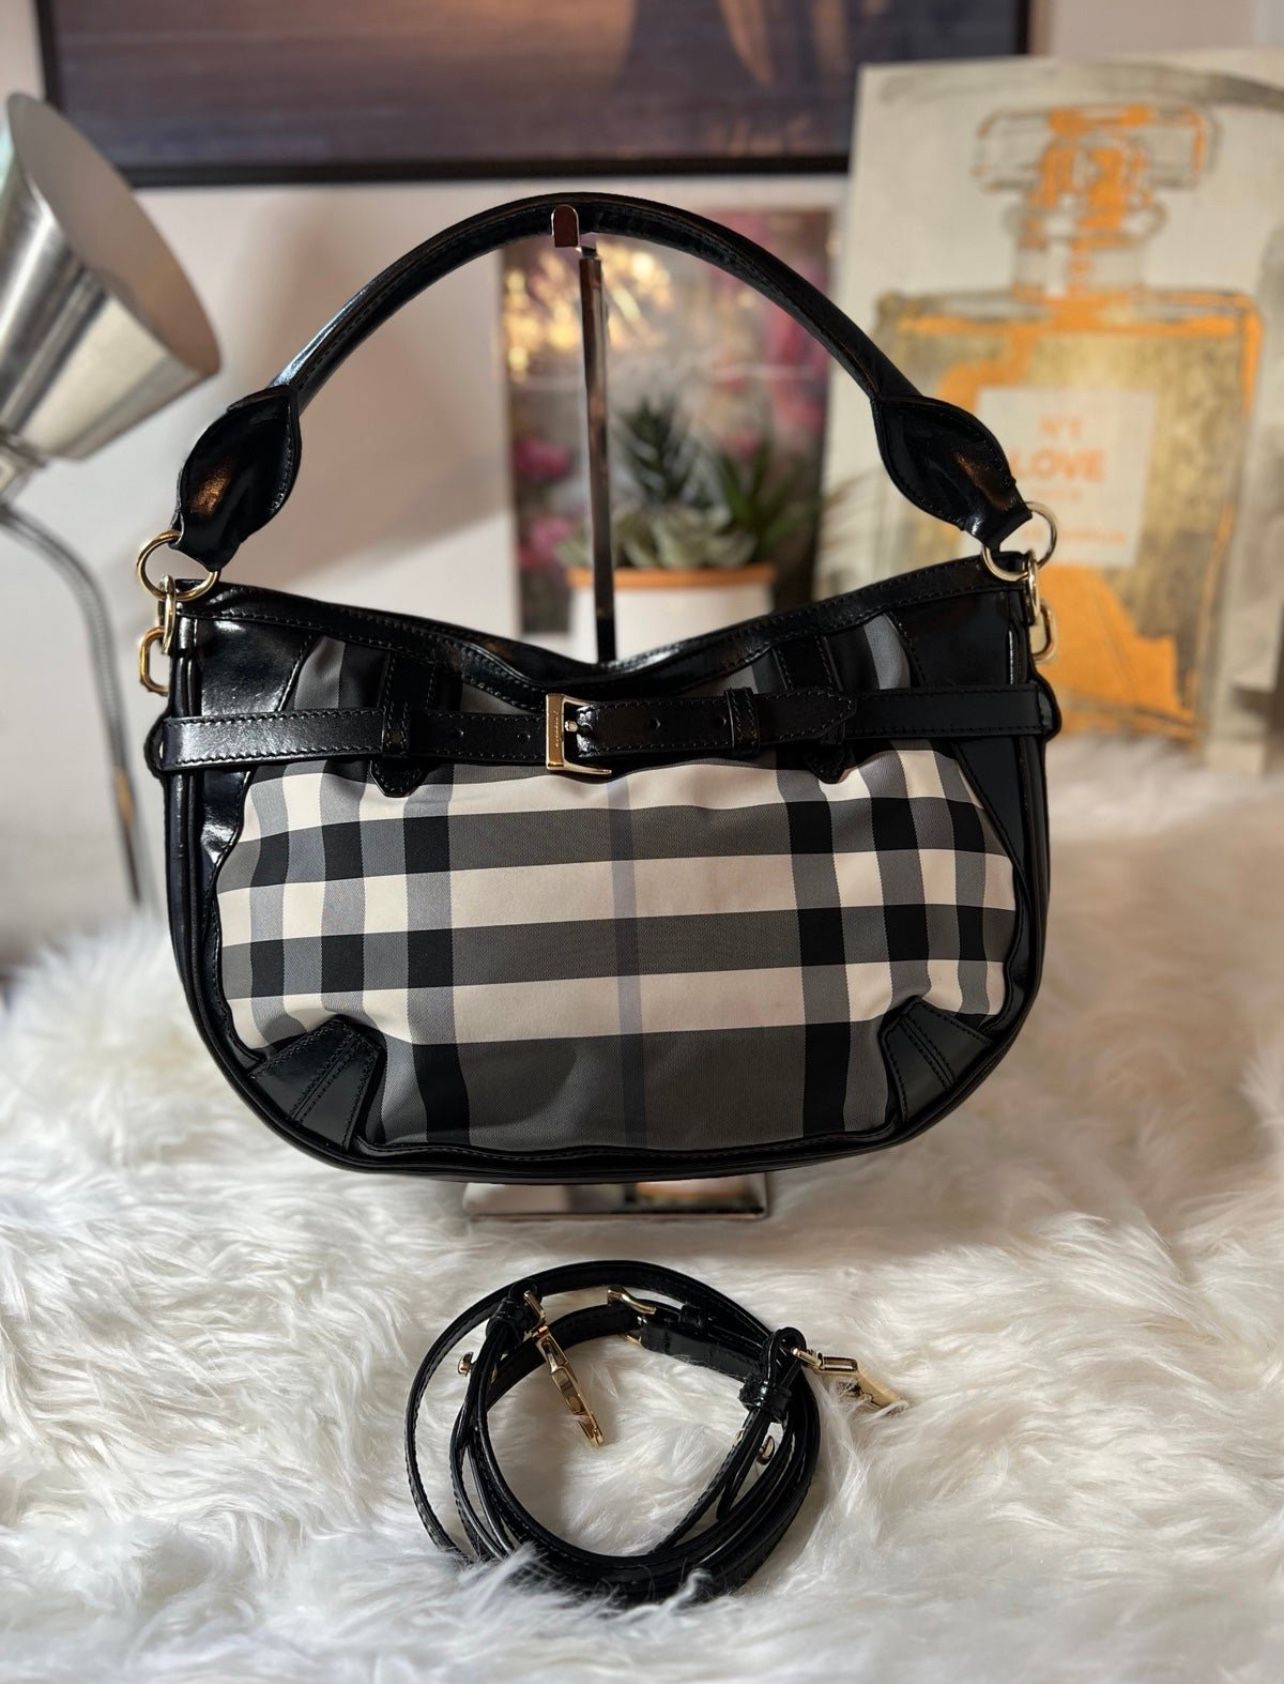 Burberry black and white bag (handbag, shoulder or crossbody bag)